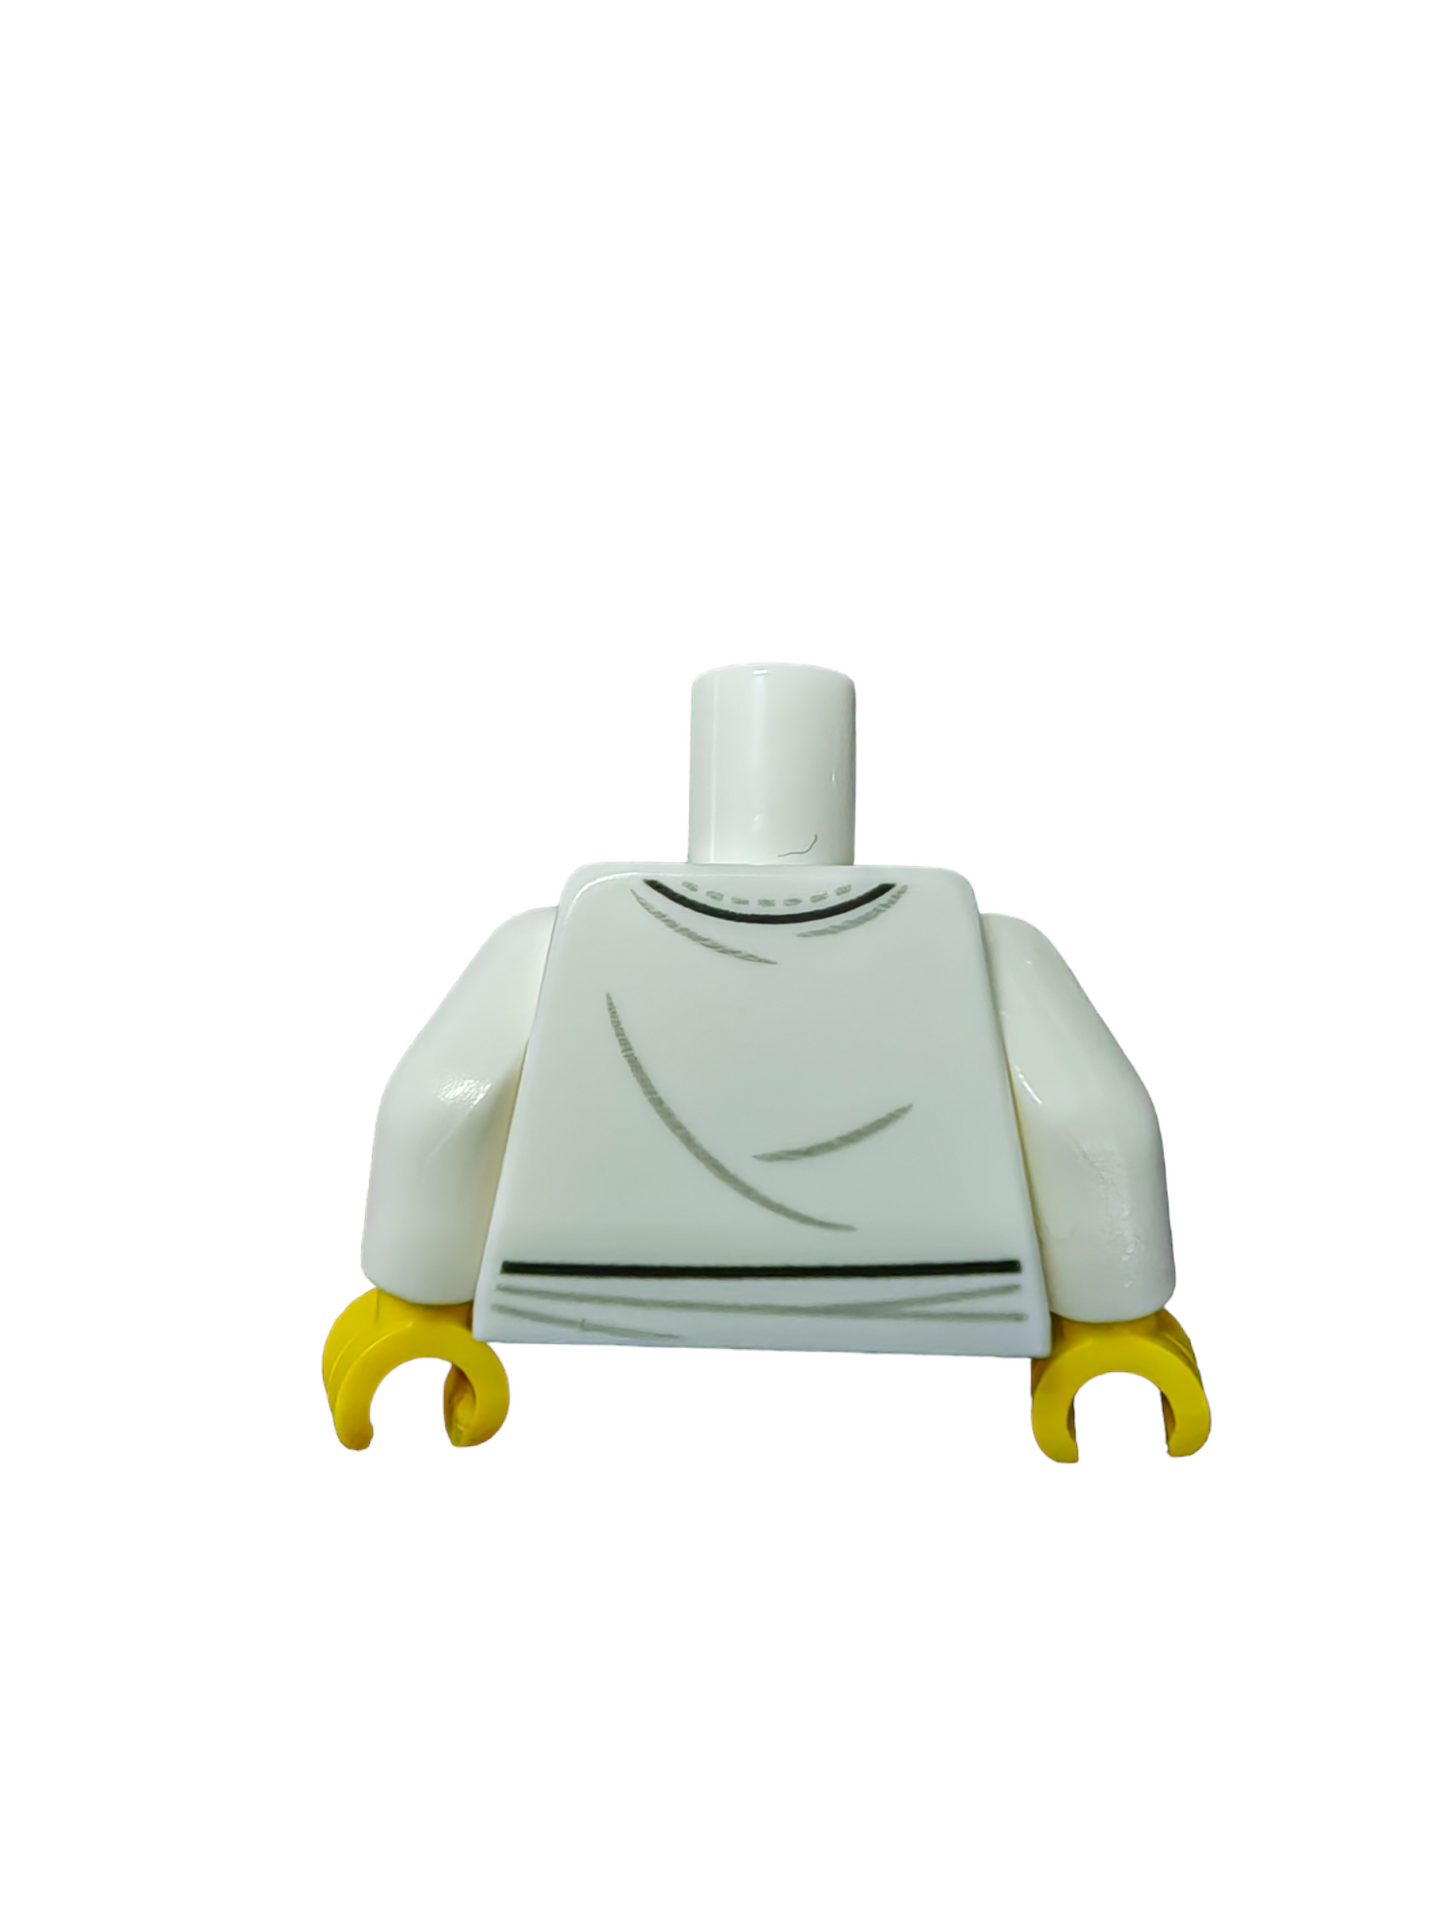 LEGO Torso, White Martial Arts Top, Circle Symbols - UB1123